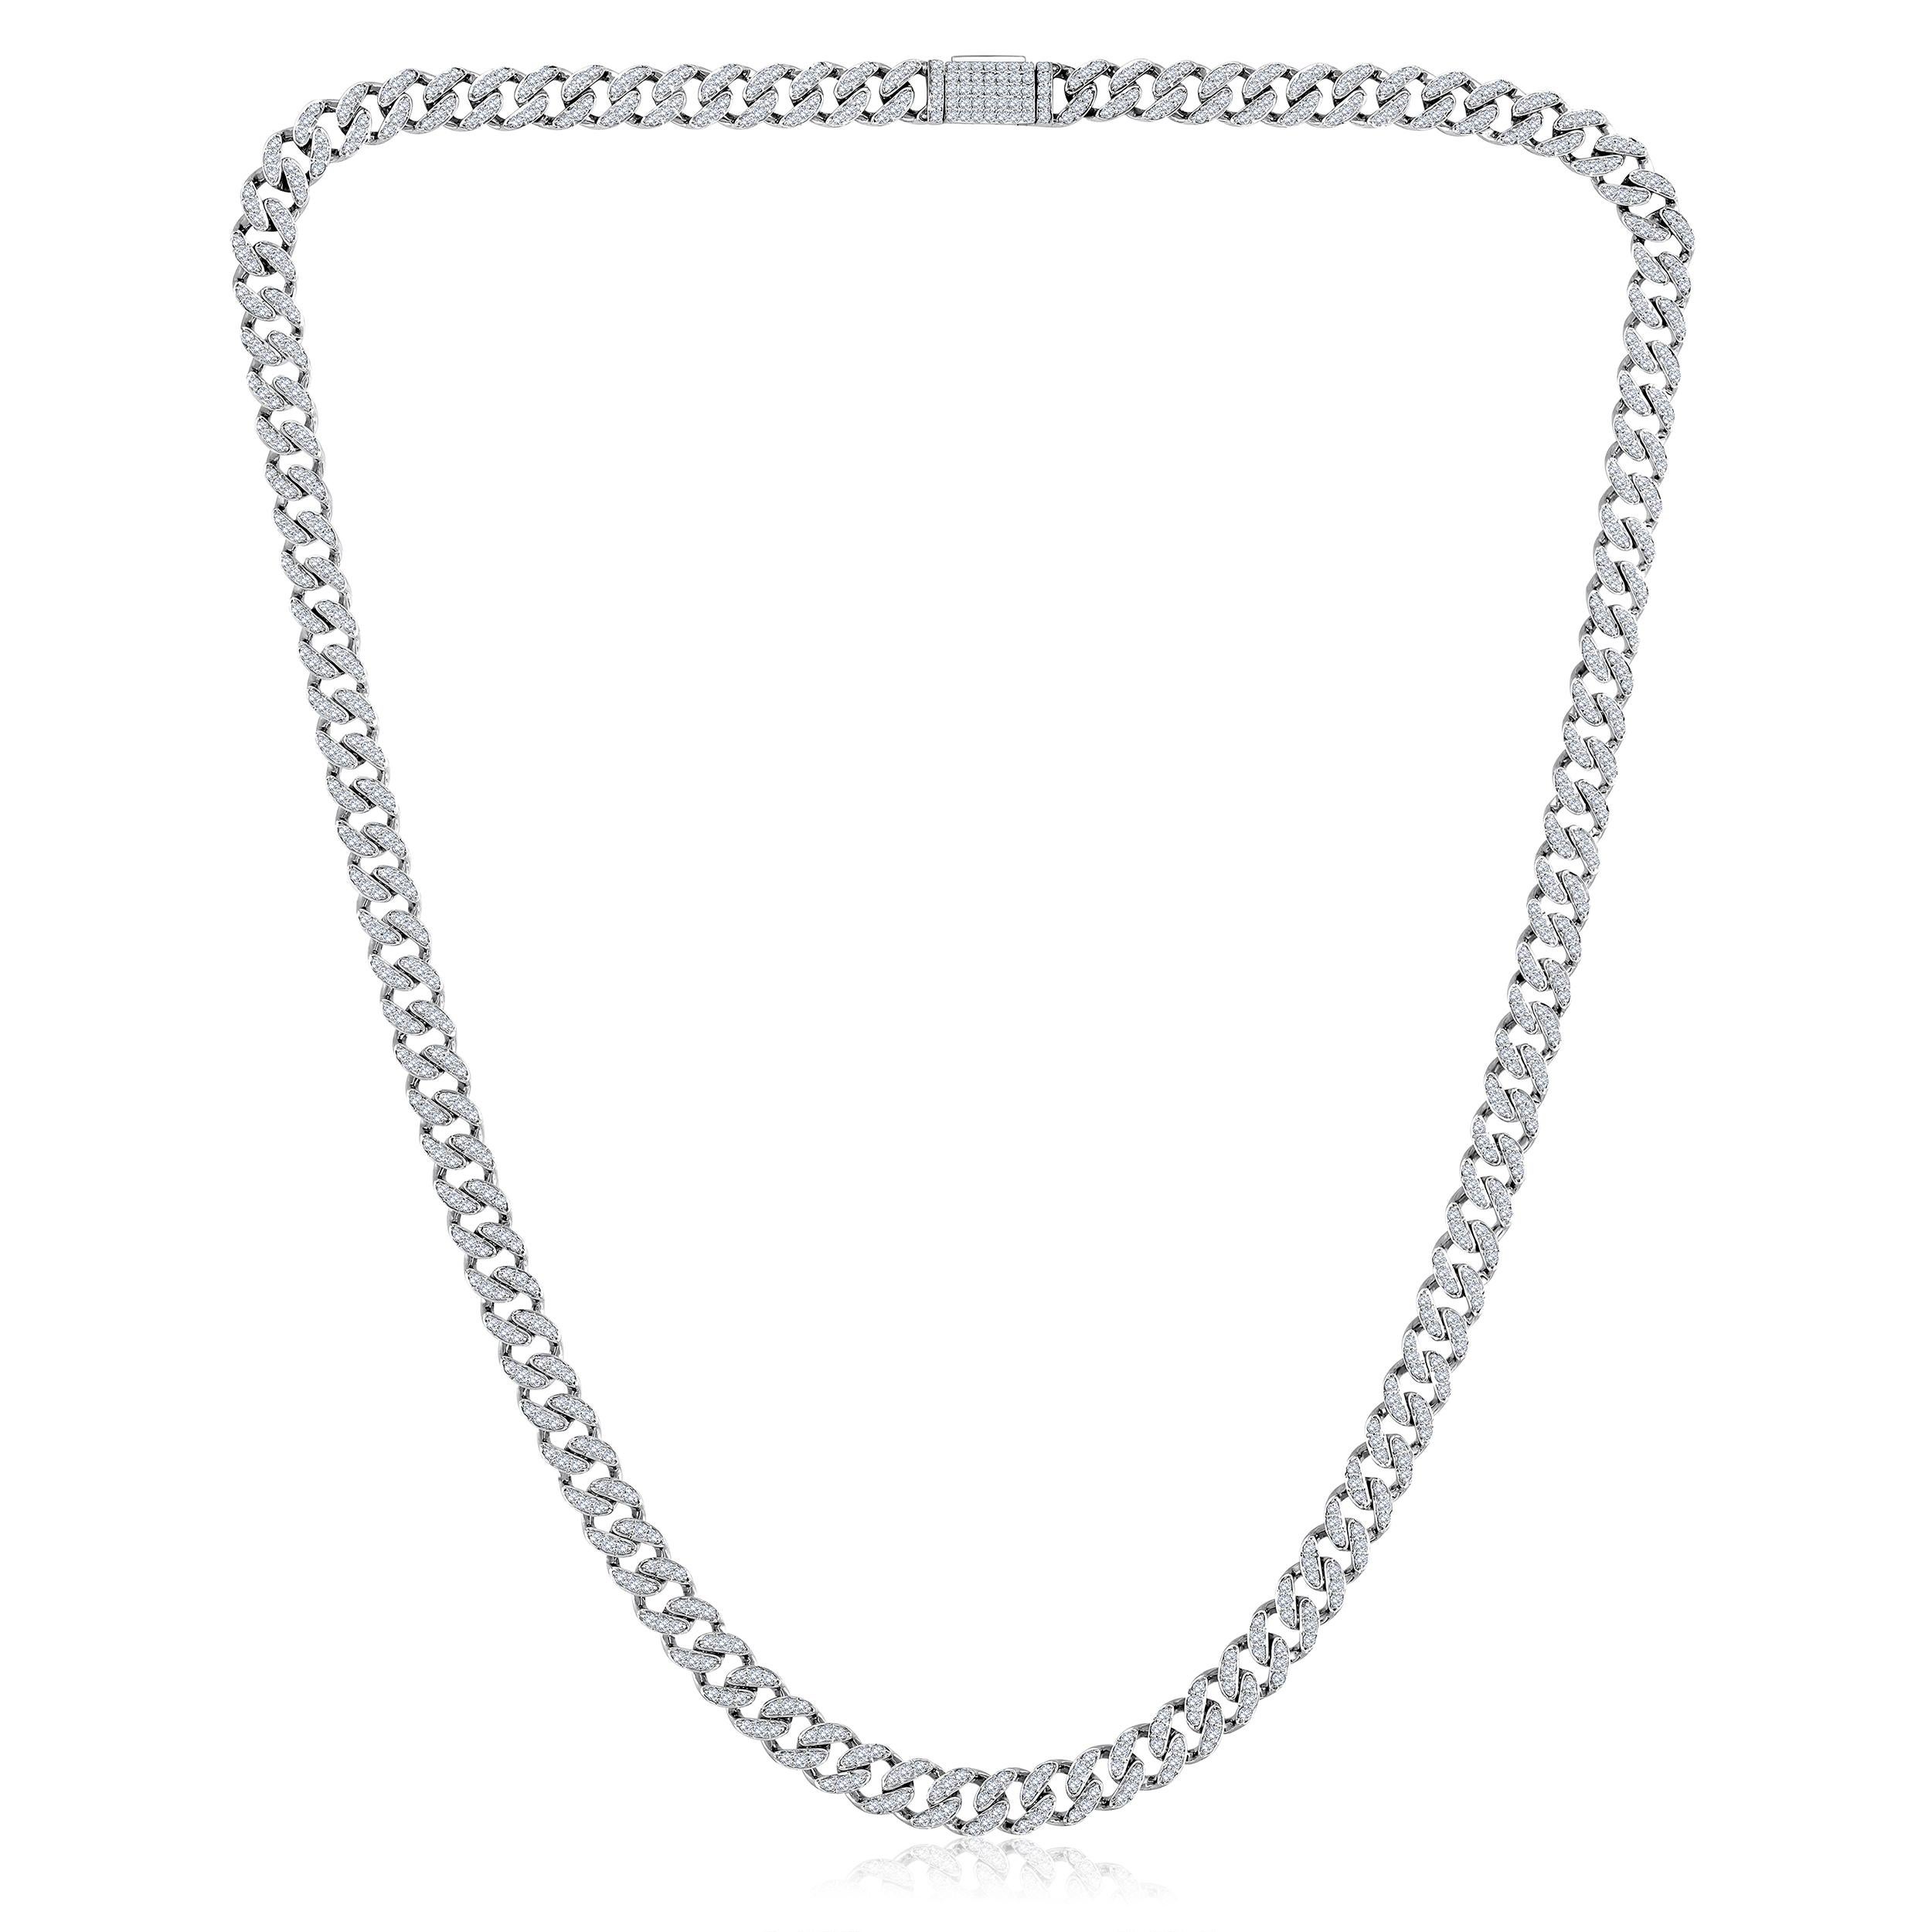 Die Halskette besteht aus 16,25 Gramm 10-karätigem Weißgold und enthält 705 runde Diamanten mit einem Gesamtgewicht von 2,92 Karat in der Farbe F-G und dem Gewicht I1-I2. Die Länge der Halskette beträgt 16 Zoll.

ZEITGENÖSSISCHE UND ZEITLOSE ESSENZ: